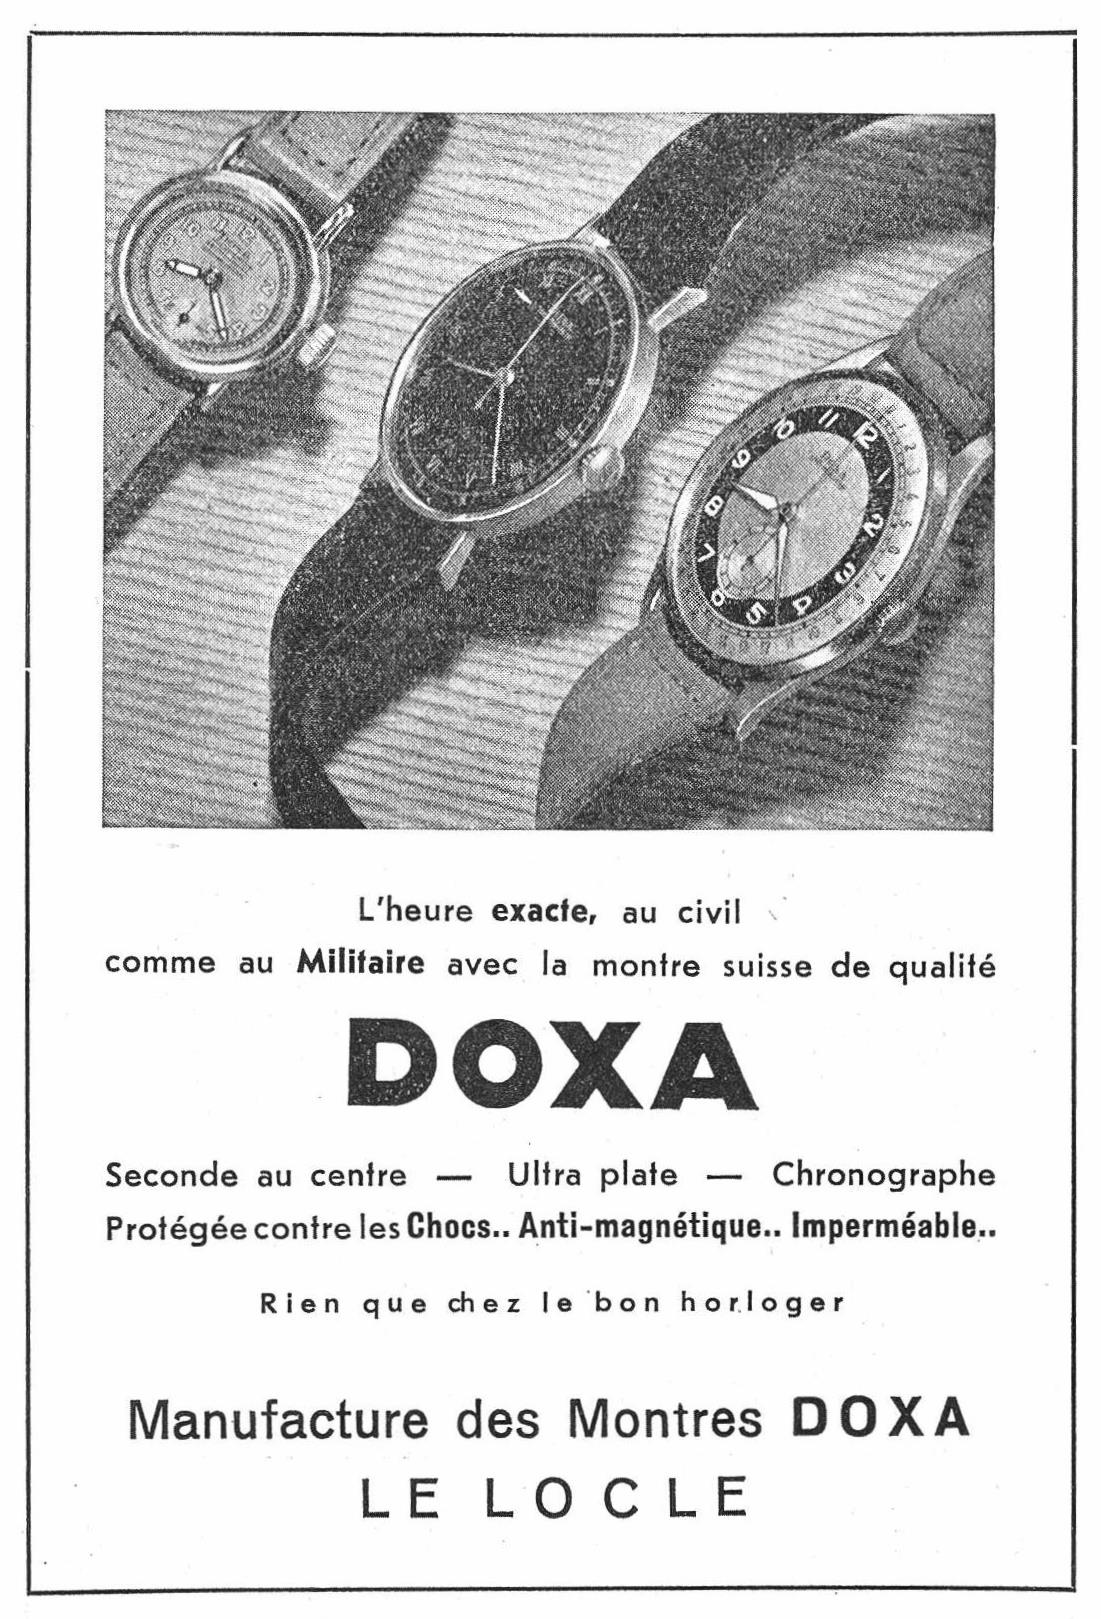 Doxa 1943 023.jpg